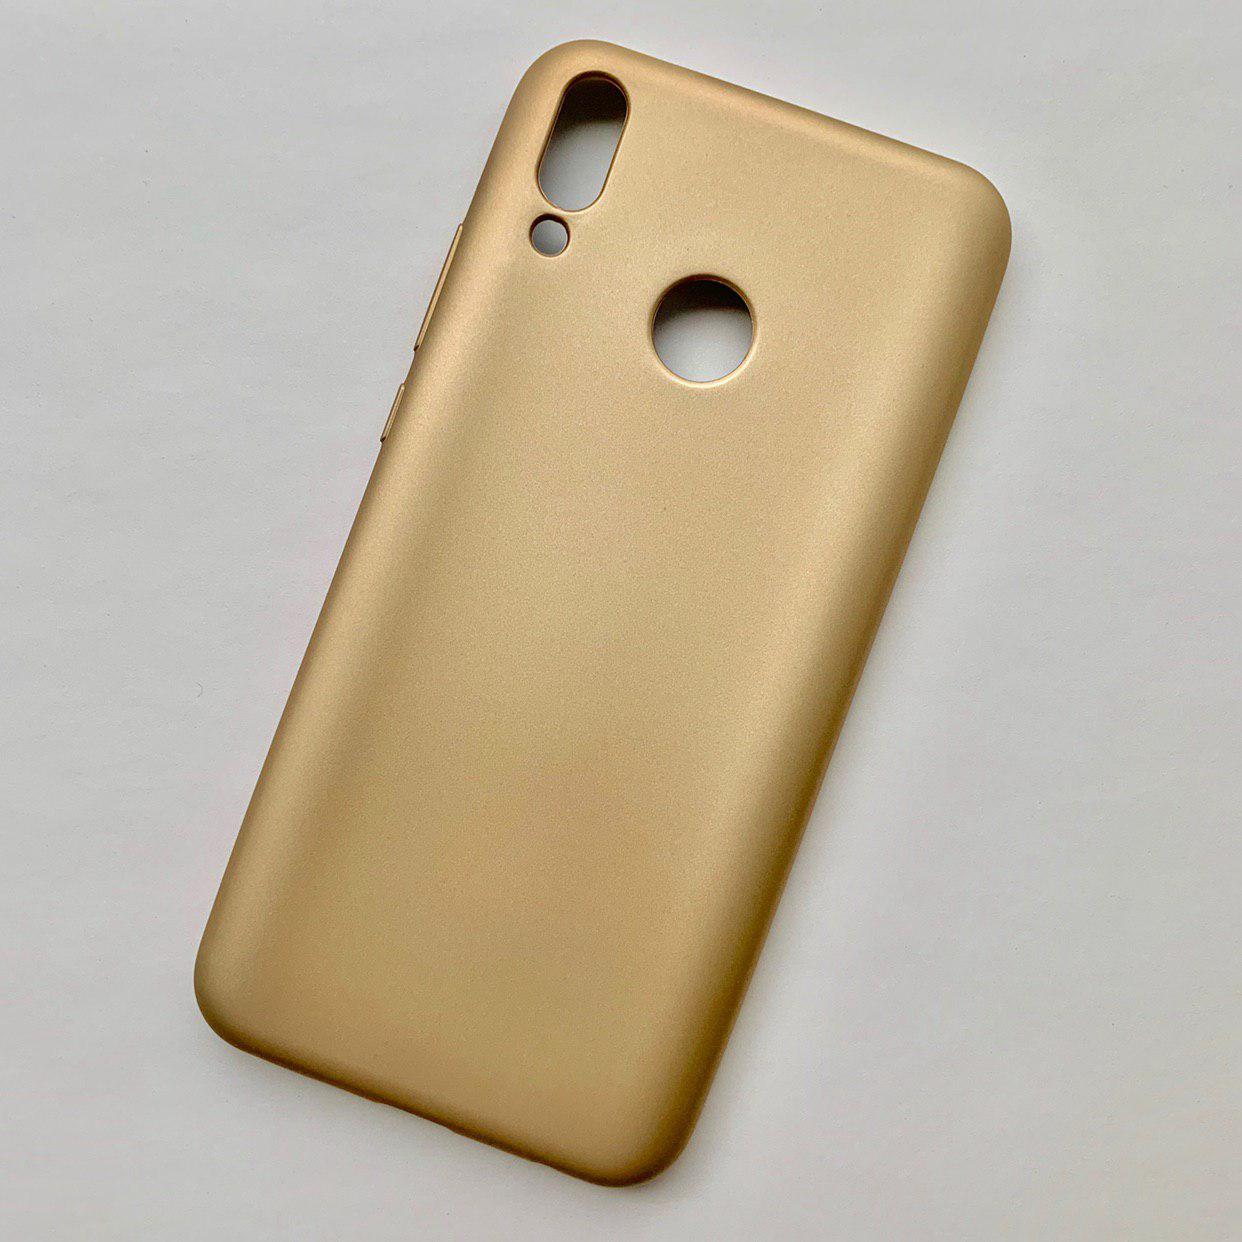 Чехол-накладка для HUAWEI Y9 2019 силиконовая 0.5mm J-Case THIN, цвет золотистый.